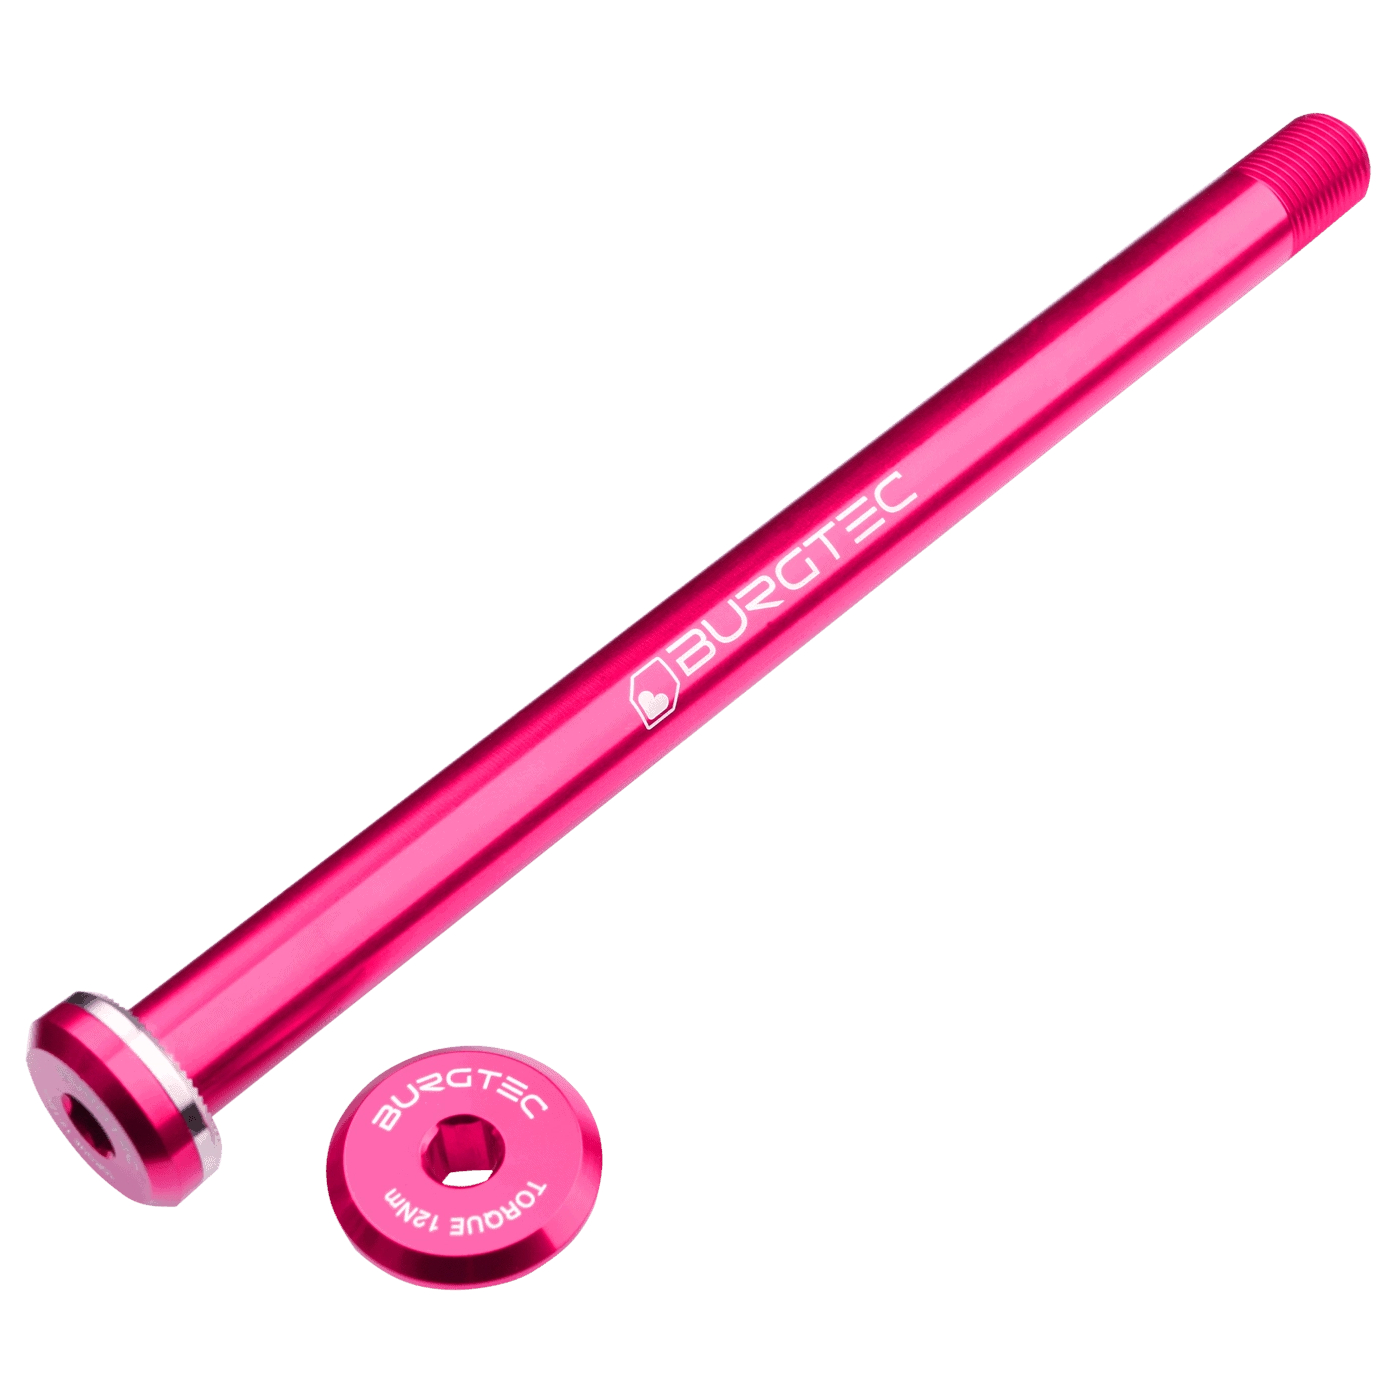 Produktbild von Burgtec Steckachse - 12x148mm Boost - für Santa Cruz Ausfallenden / 168,5mm - Toxic Barbie Pink